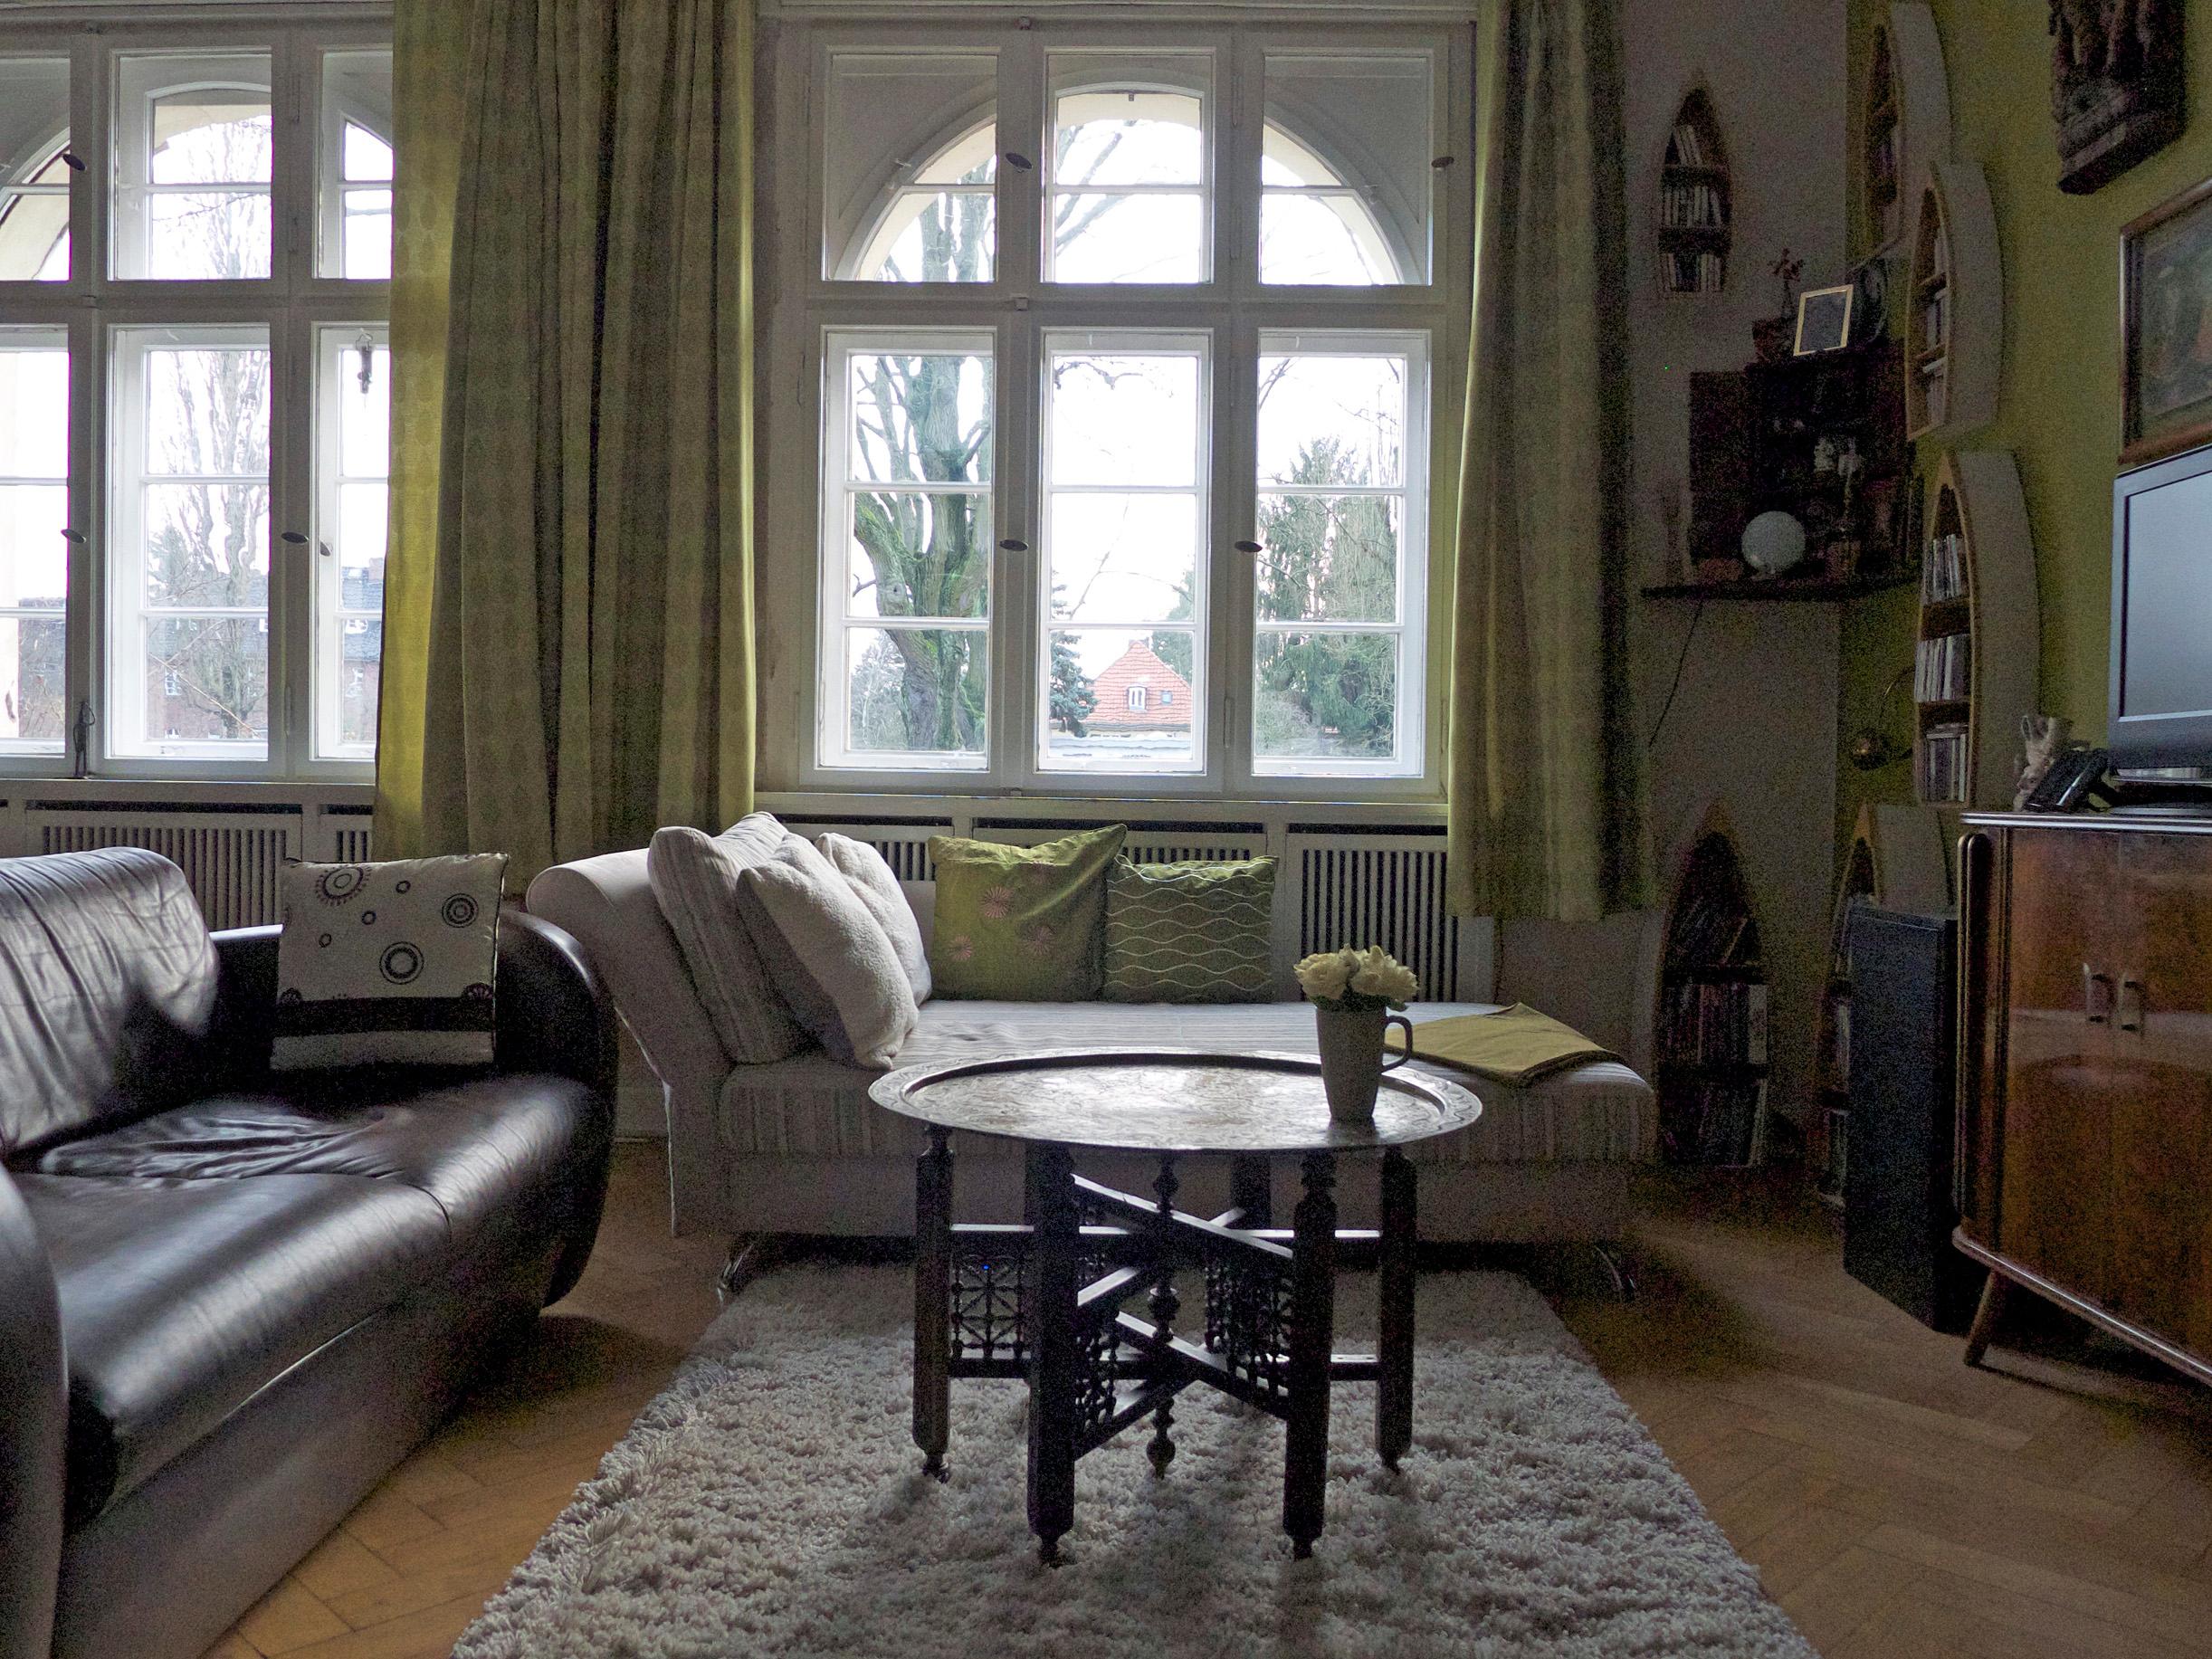 Grün im Wohnzimmer mit Ethno-Retro-Elementen #retro #wohnzimmer #kissen ©Guru-Shop